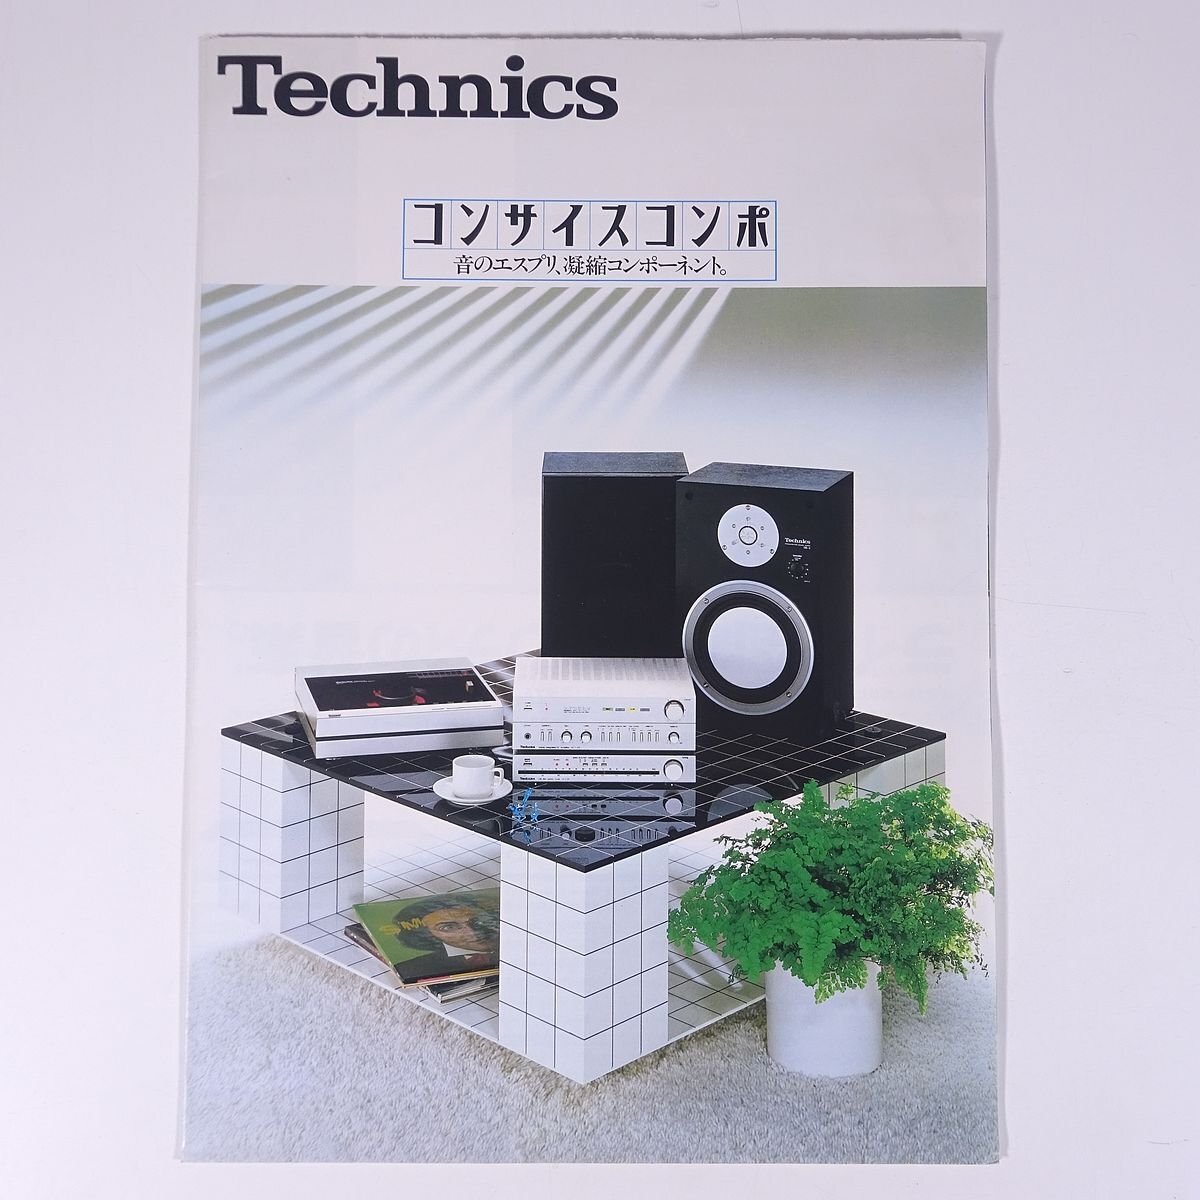 Technics テクニクス コンサイスコンポ 松下電器産業株式会社 1980年頃 昭和 小冊子 カタログ パンフレット オーディオの画像1